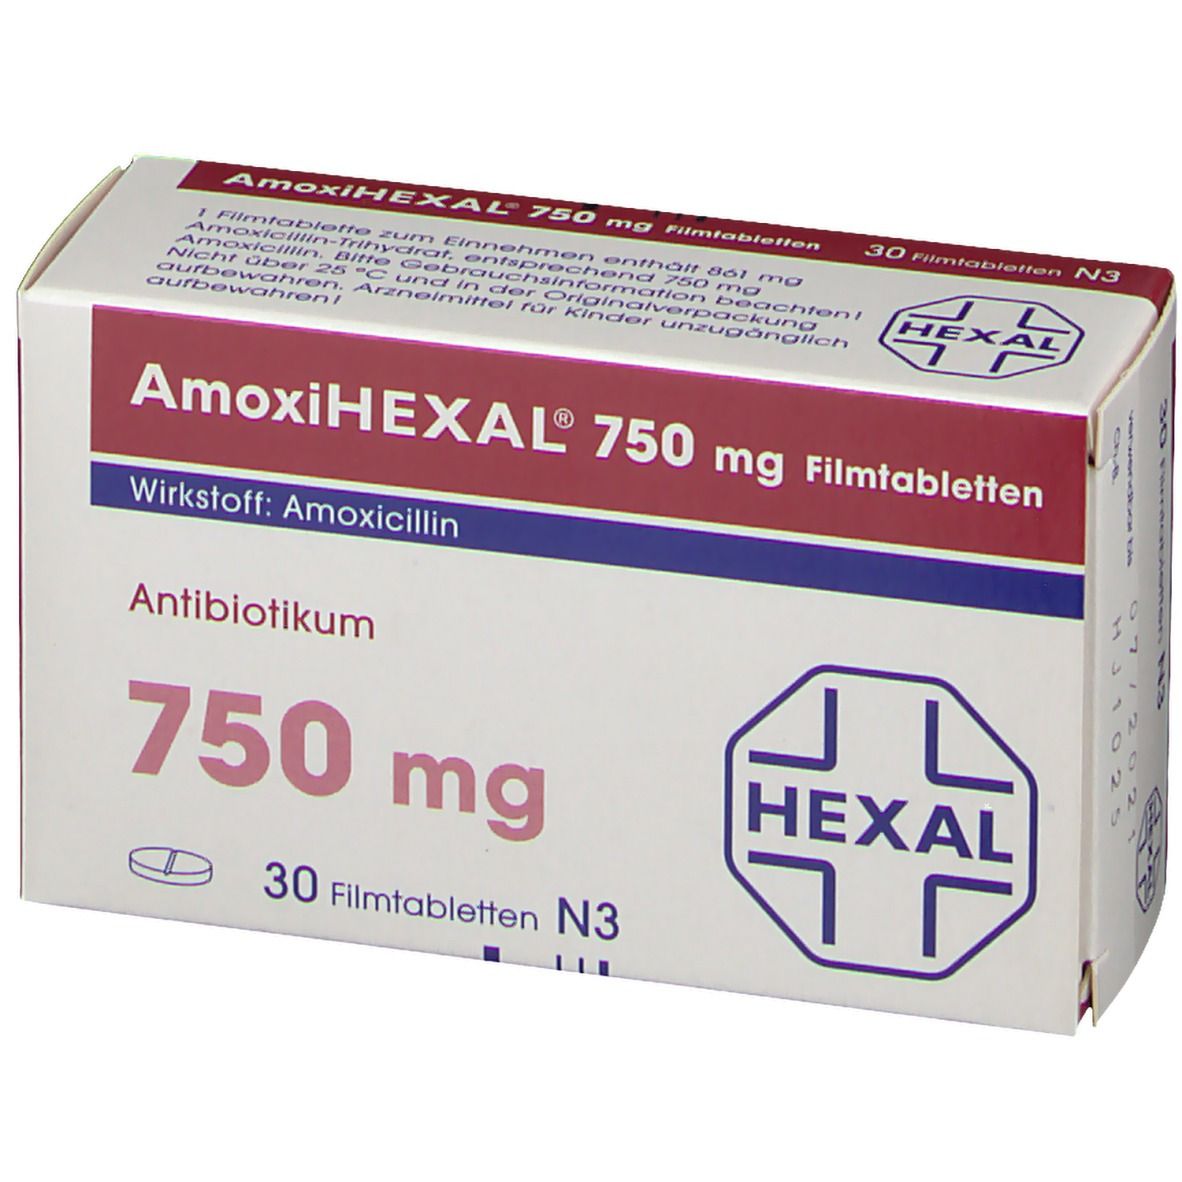 AmoxiHEXAL® 750 mg